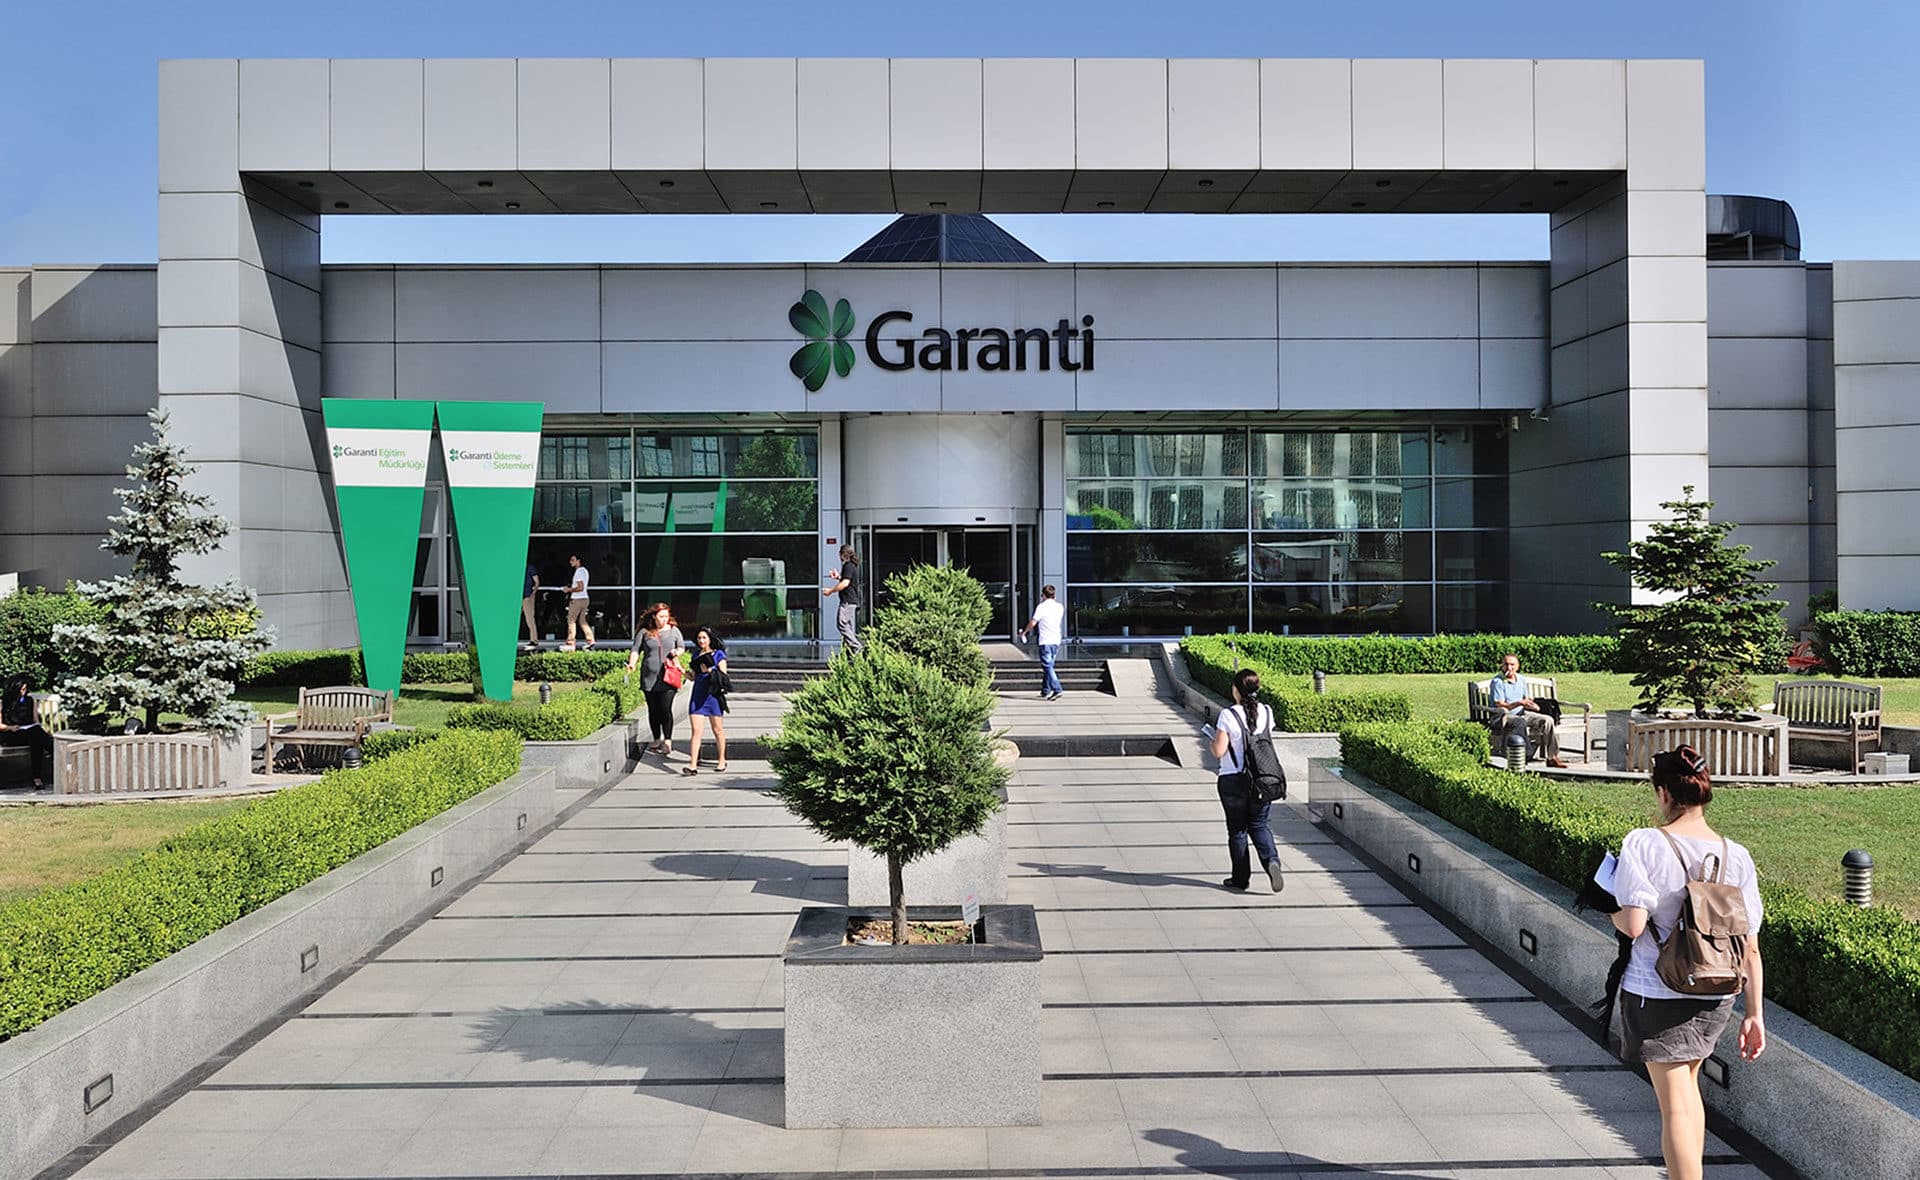 Esta es una fotografía de un banco Garanti, relacionada con la entrada Garanti Bank optimiza su proceso de monitoreo